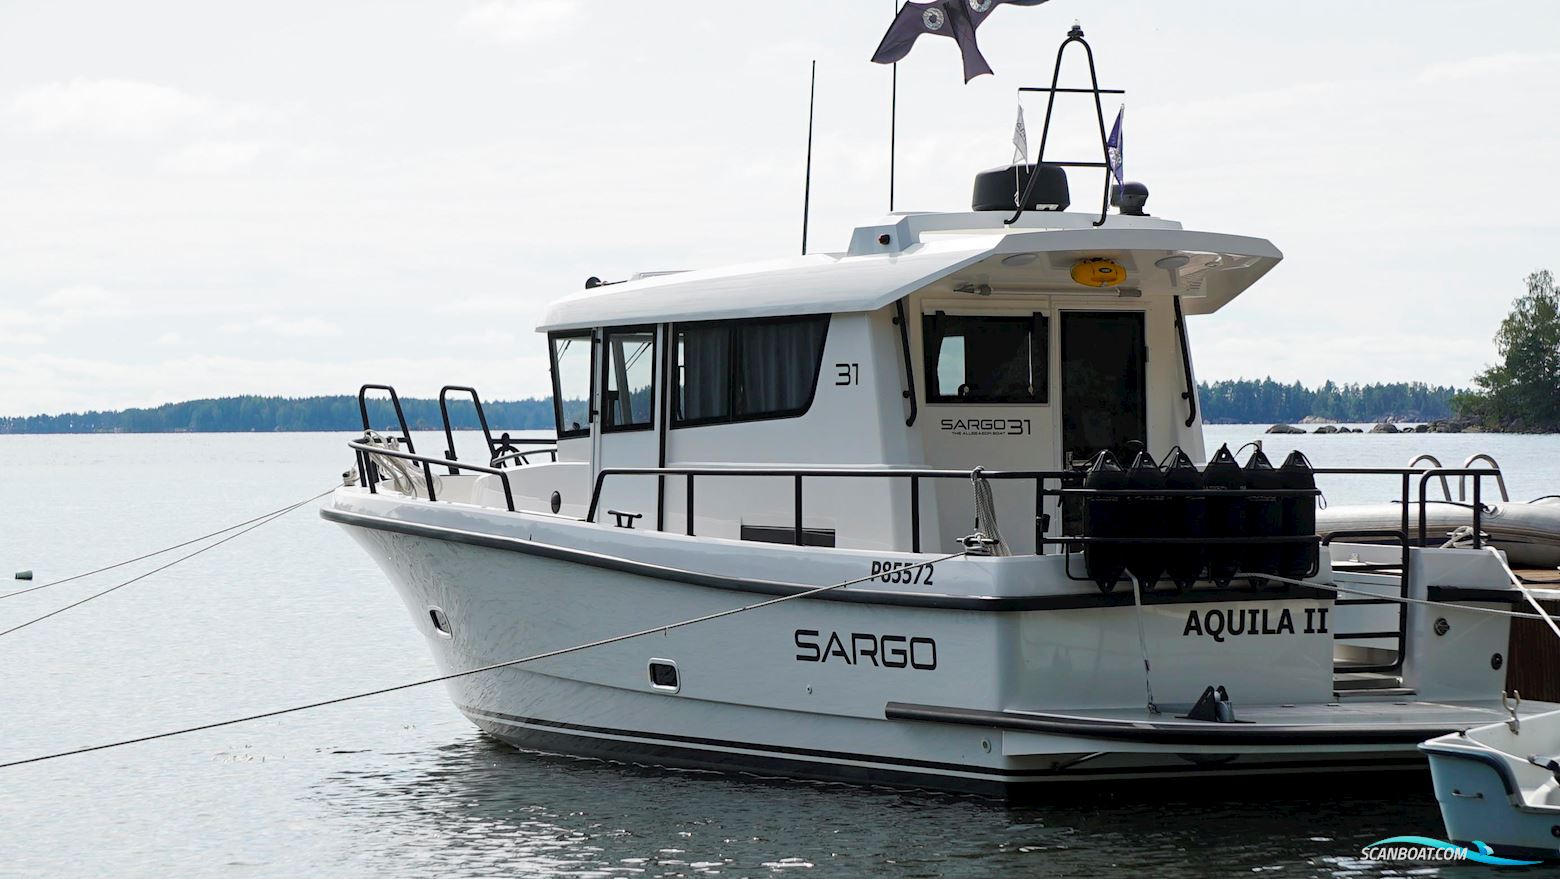 Sargo 31 Motorbåt 2020, med Volvo Penta D6-380 motor, Finland